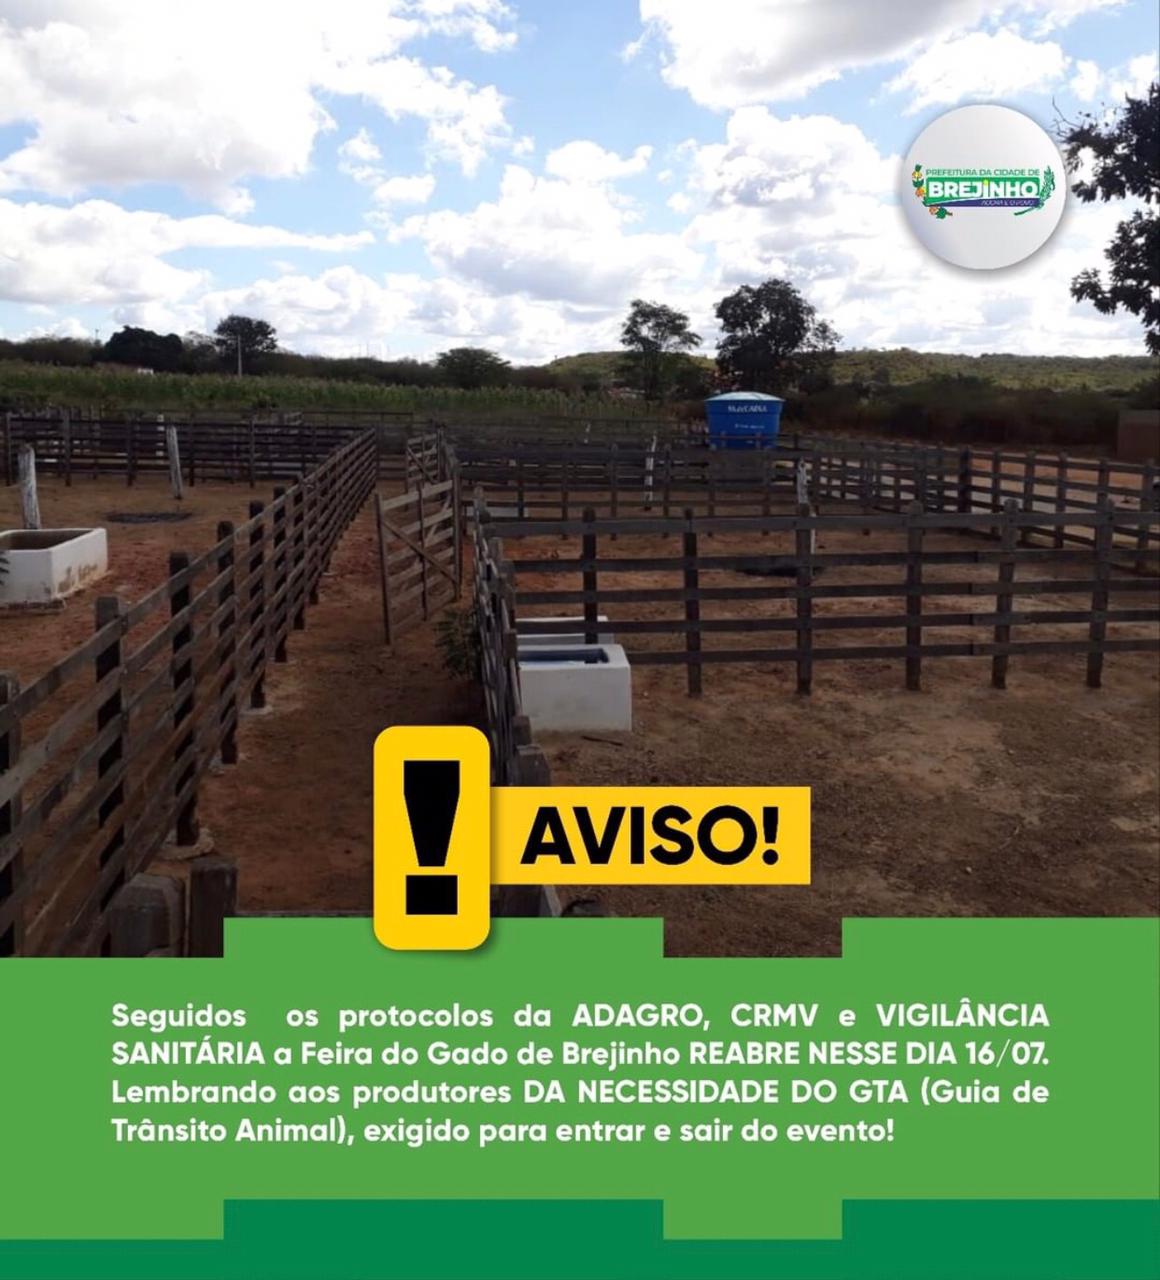 You are currently viewing Prefeitura de Brejinho comunica que a volta da feira do gado acontecerá dia 16 de julho